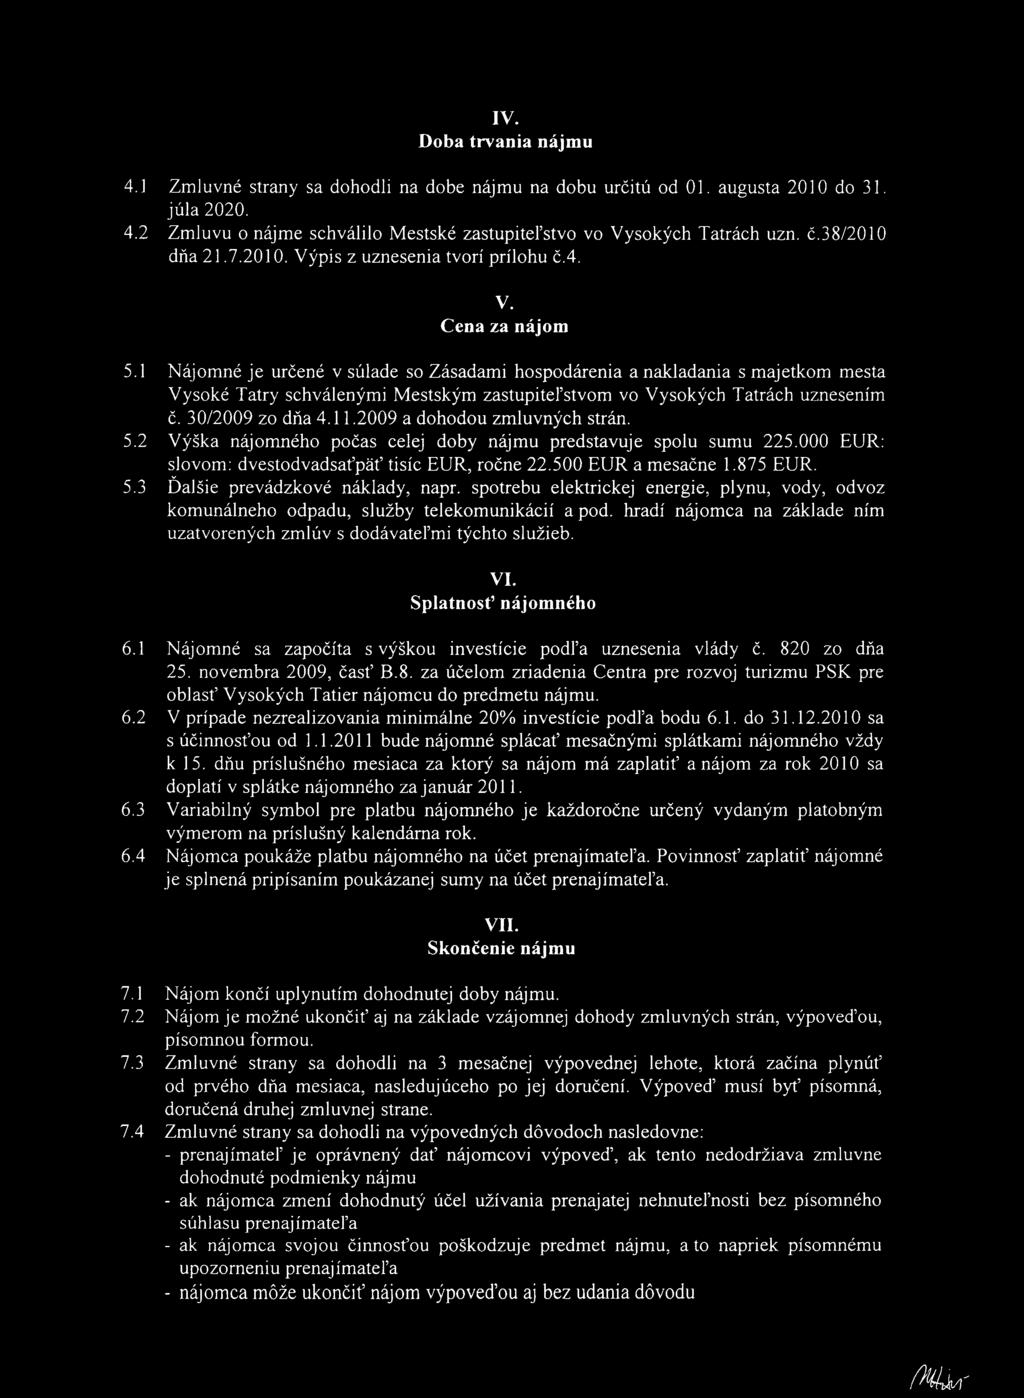 1 Nájomné je určené v súlade so Zásadami hospodárenia a nakladania s majetkom mesta Vysoké Tatry schválenými Mestským zastupiteľstvom vo Vysokých Tatrách uznesením č. 30/2009 zo dňa 4.11.